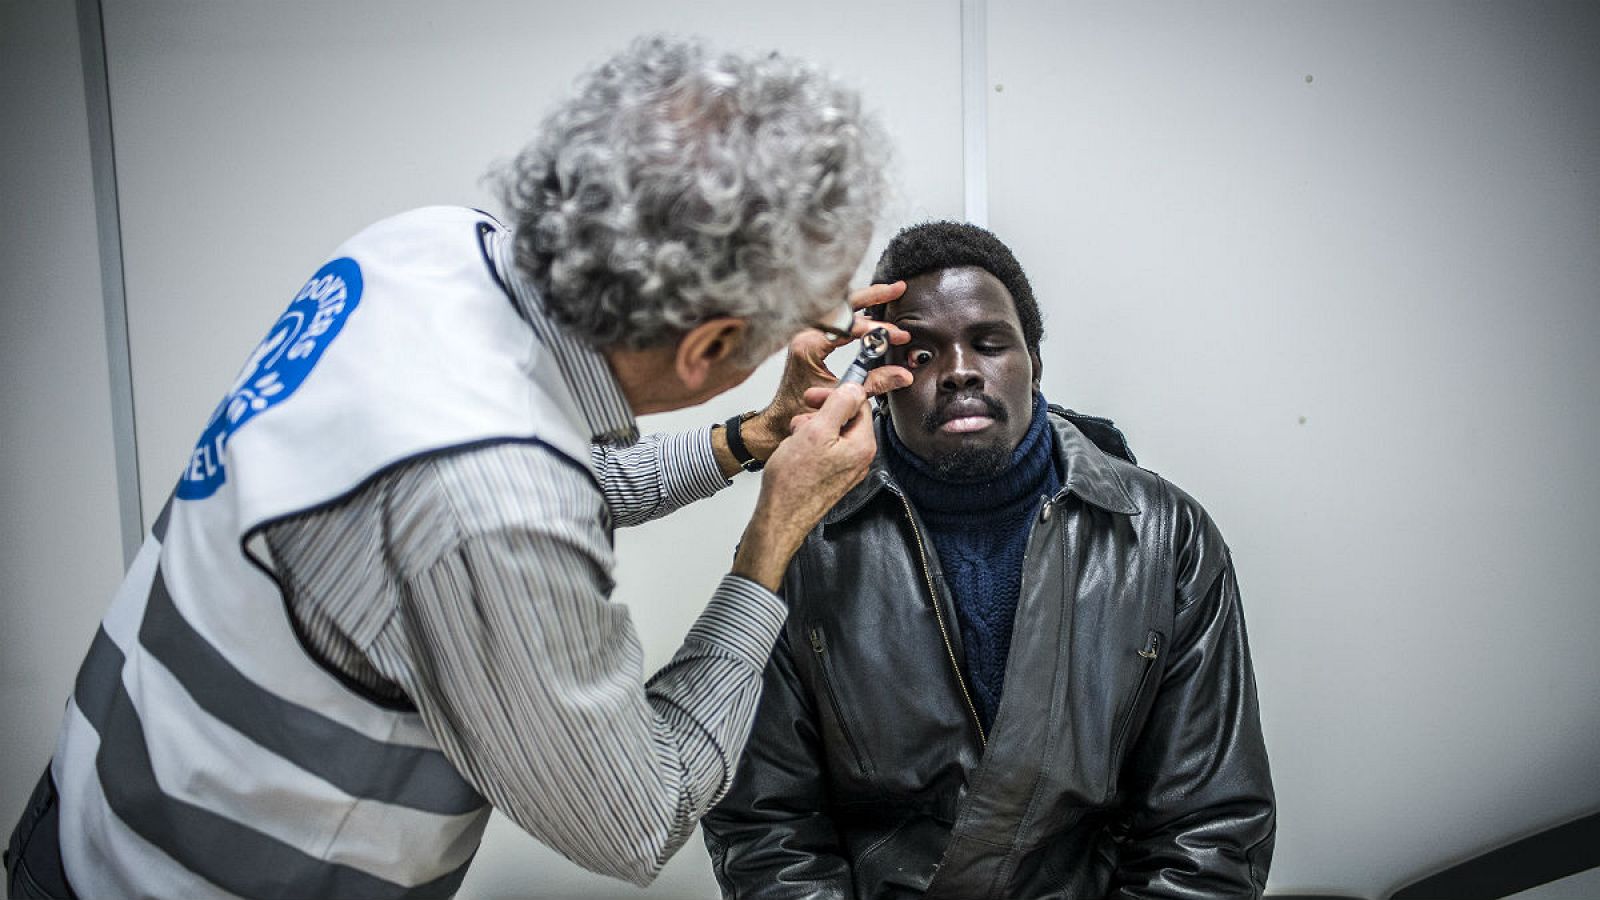 El Centro Humanitario de Bruselas ayuda a migrantes en tránsito